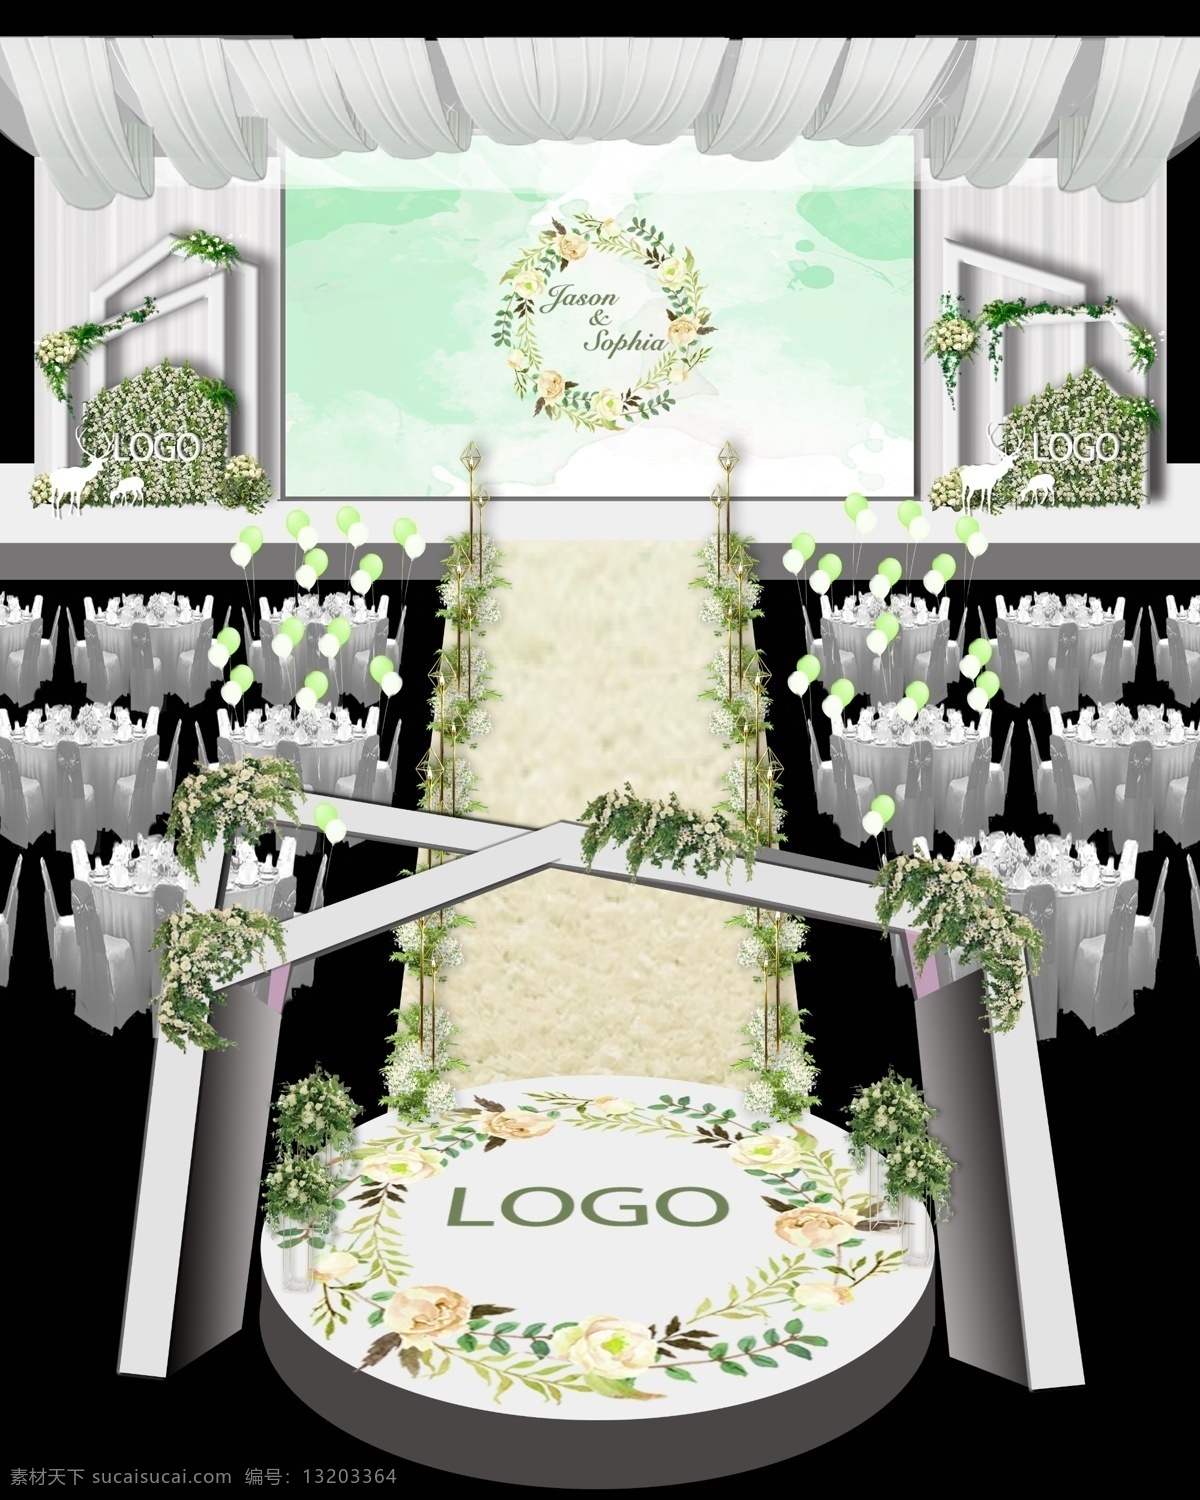 白 绿色 婚礼 异 造型 效果图 白色婚礼 绿色婚礼 结婚 舞台